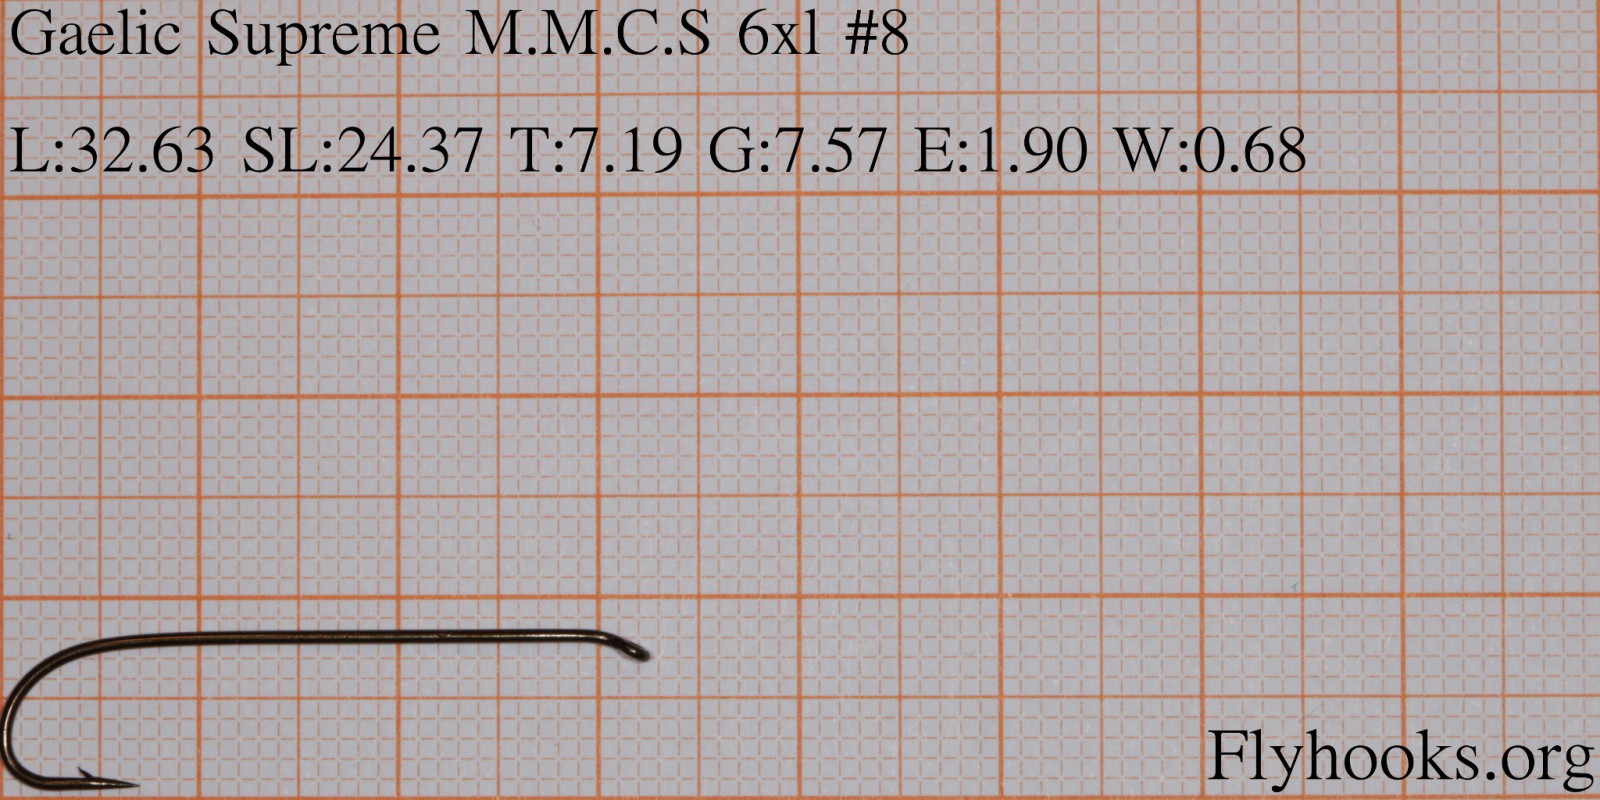 M.M.C.S 6xl